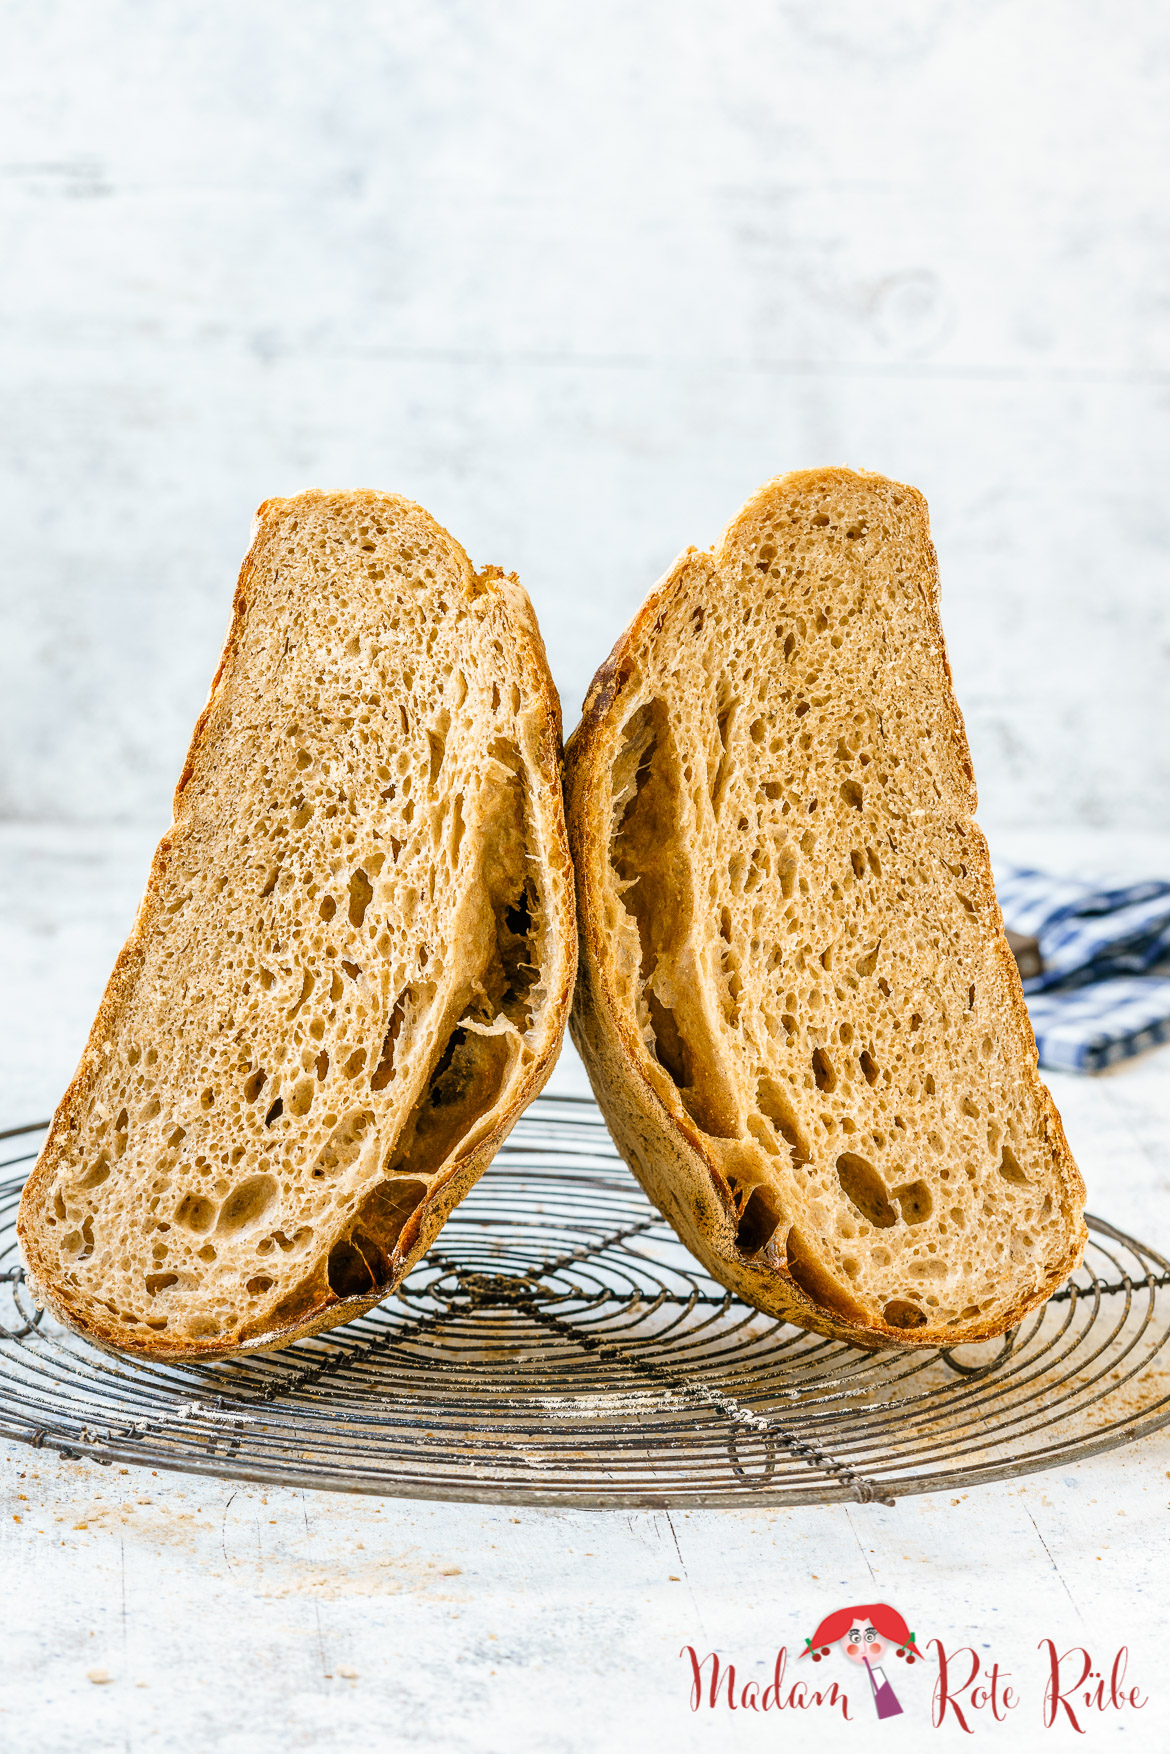 Madam Rote Rübe - Solothurner Brot mit fast 50% Weizenvollkorn-Anteil